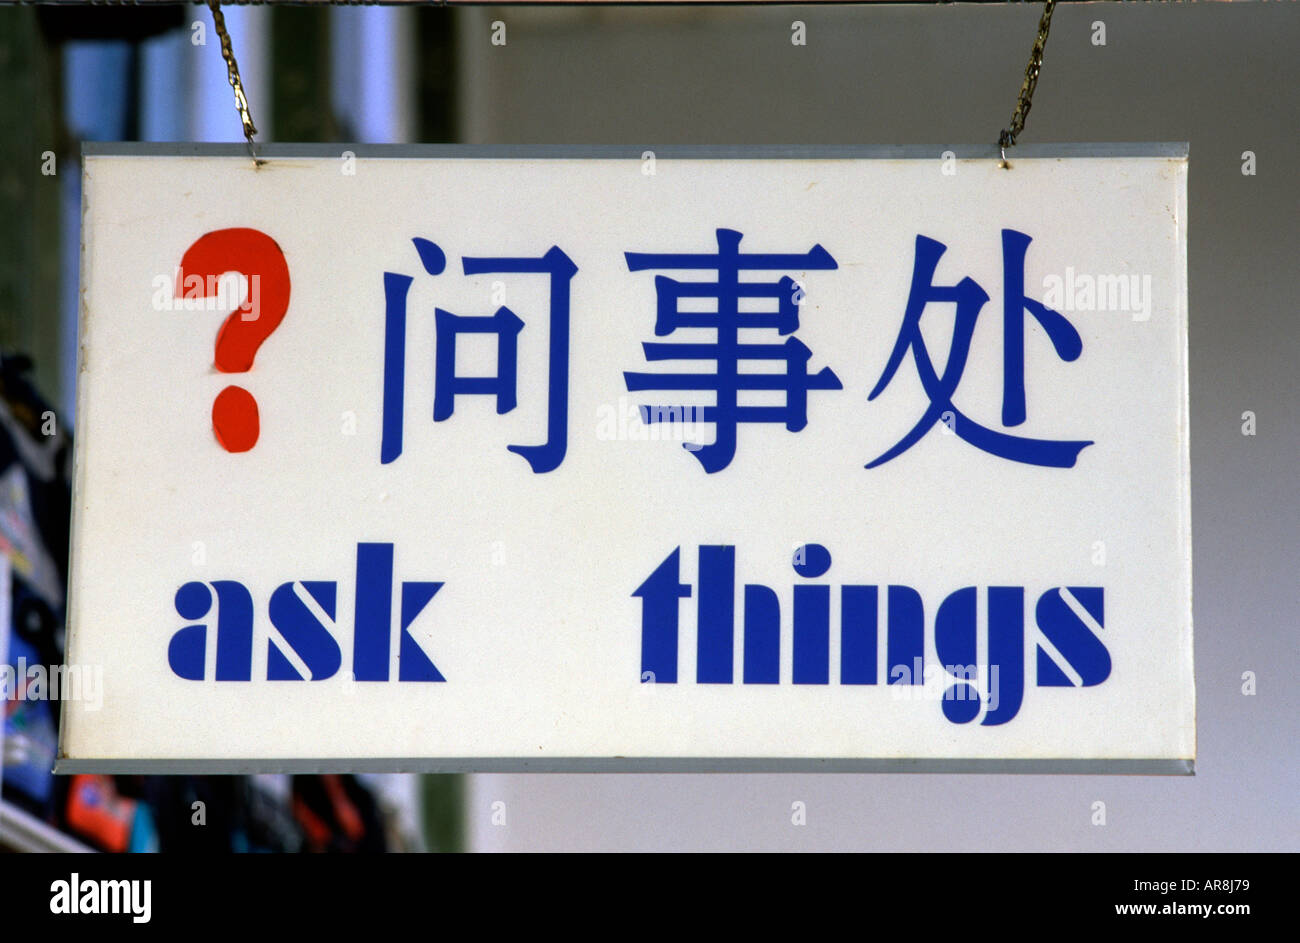 Traduction littérale du chinois vers l'anglais de l'information 24 dans une gare en Chine Banque D'Images